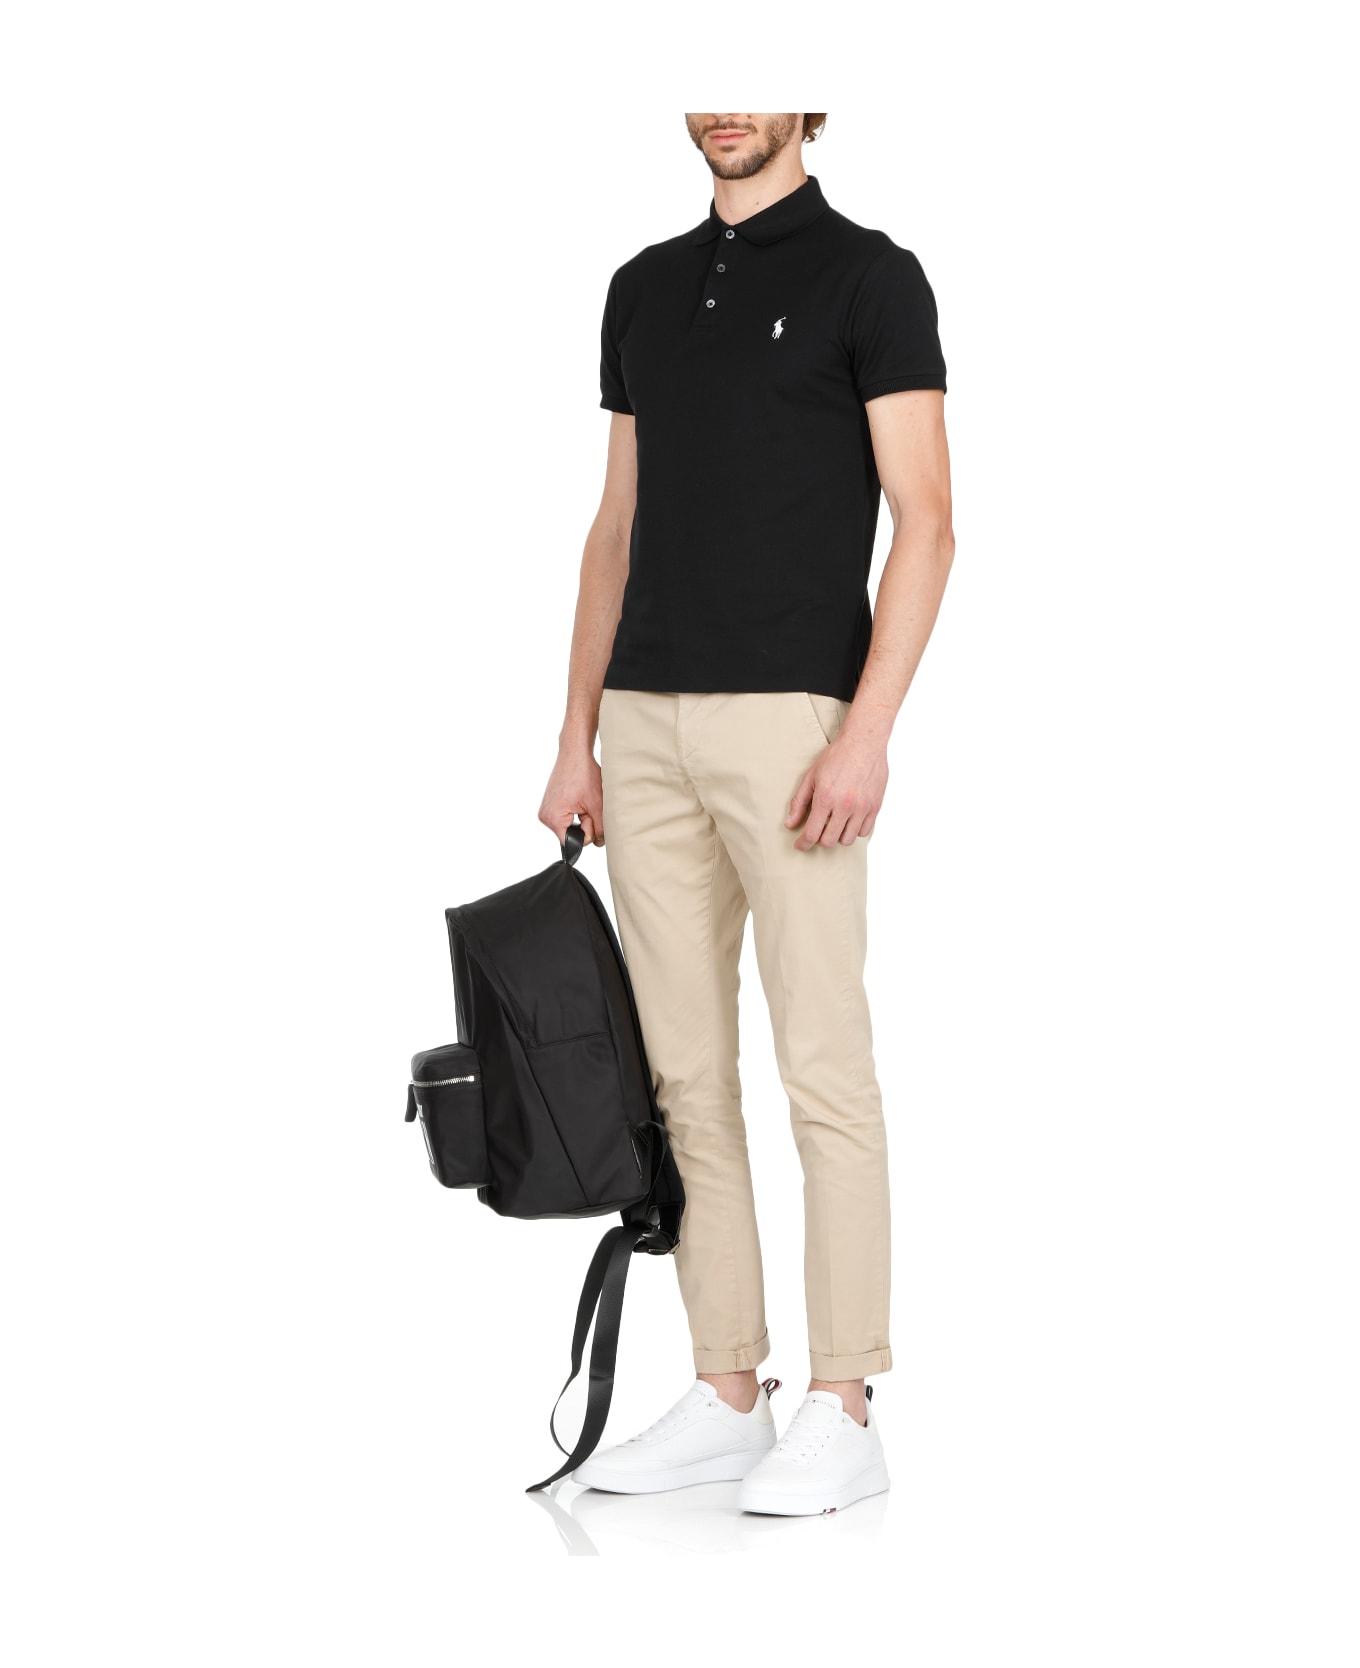 Ralph Lauren Cotton Polo Shirt - Polo Black